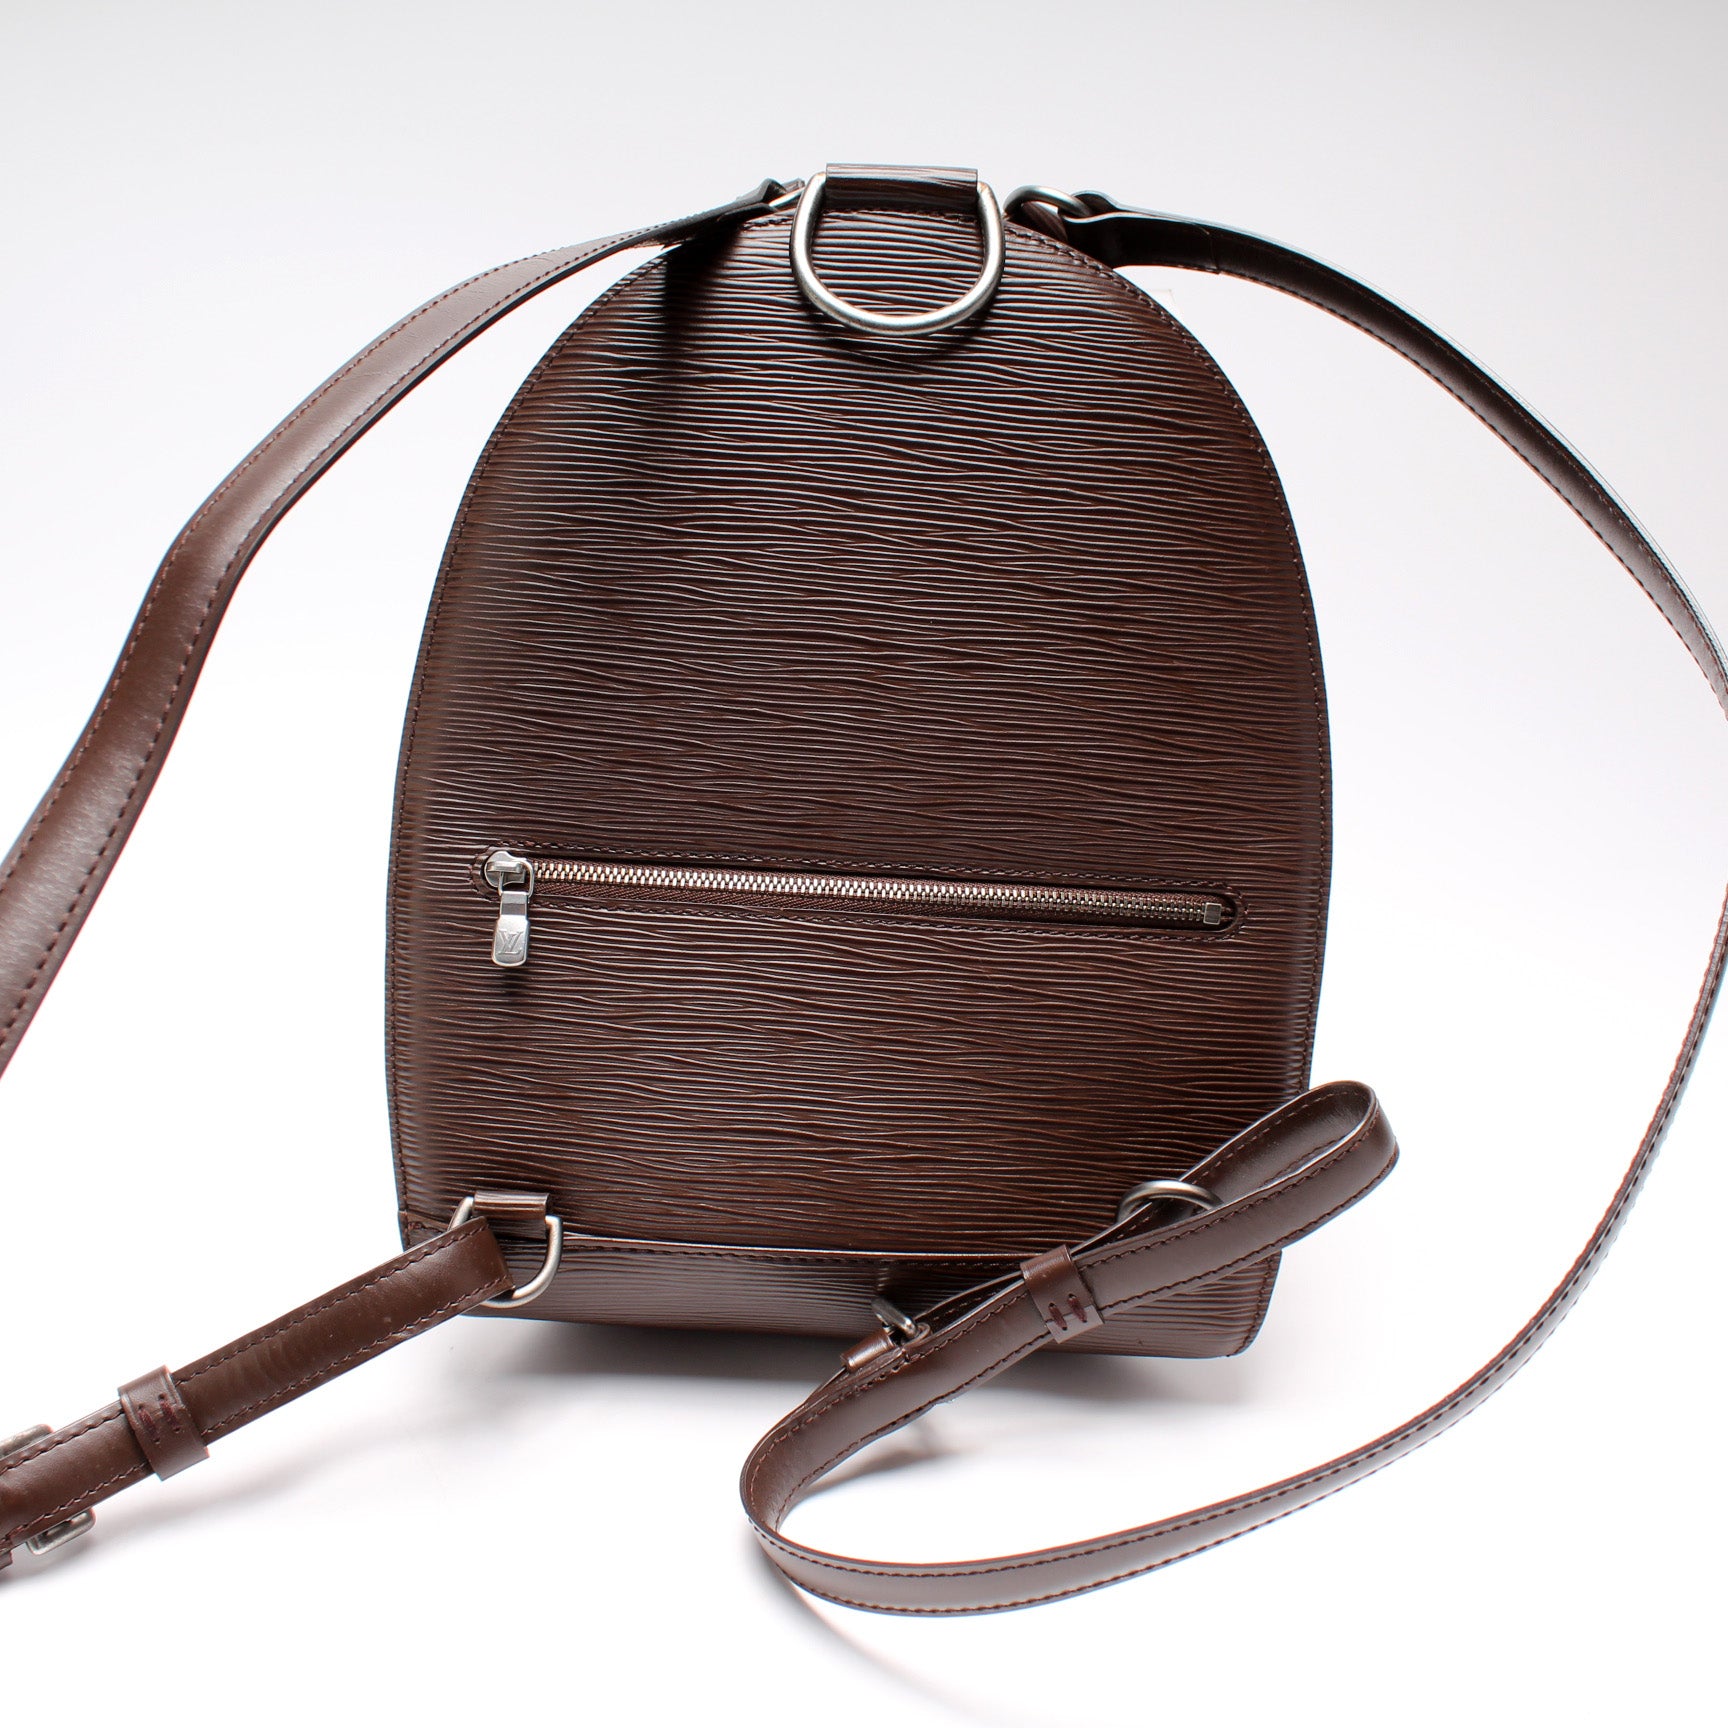 leather backpack epi